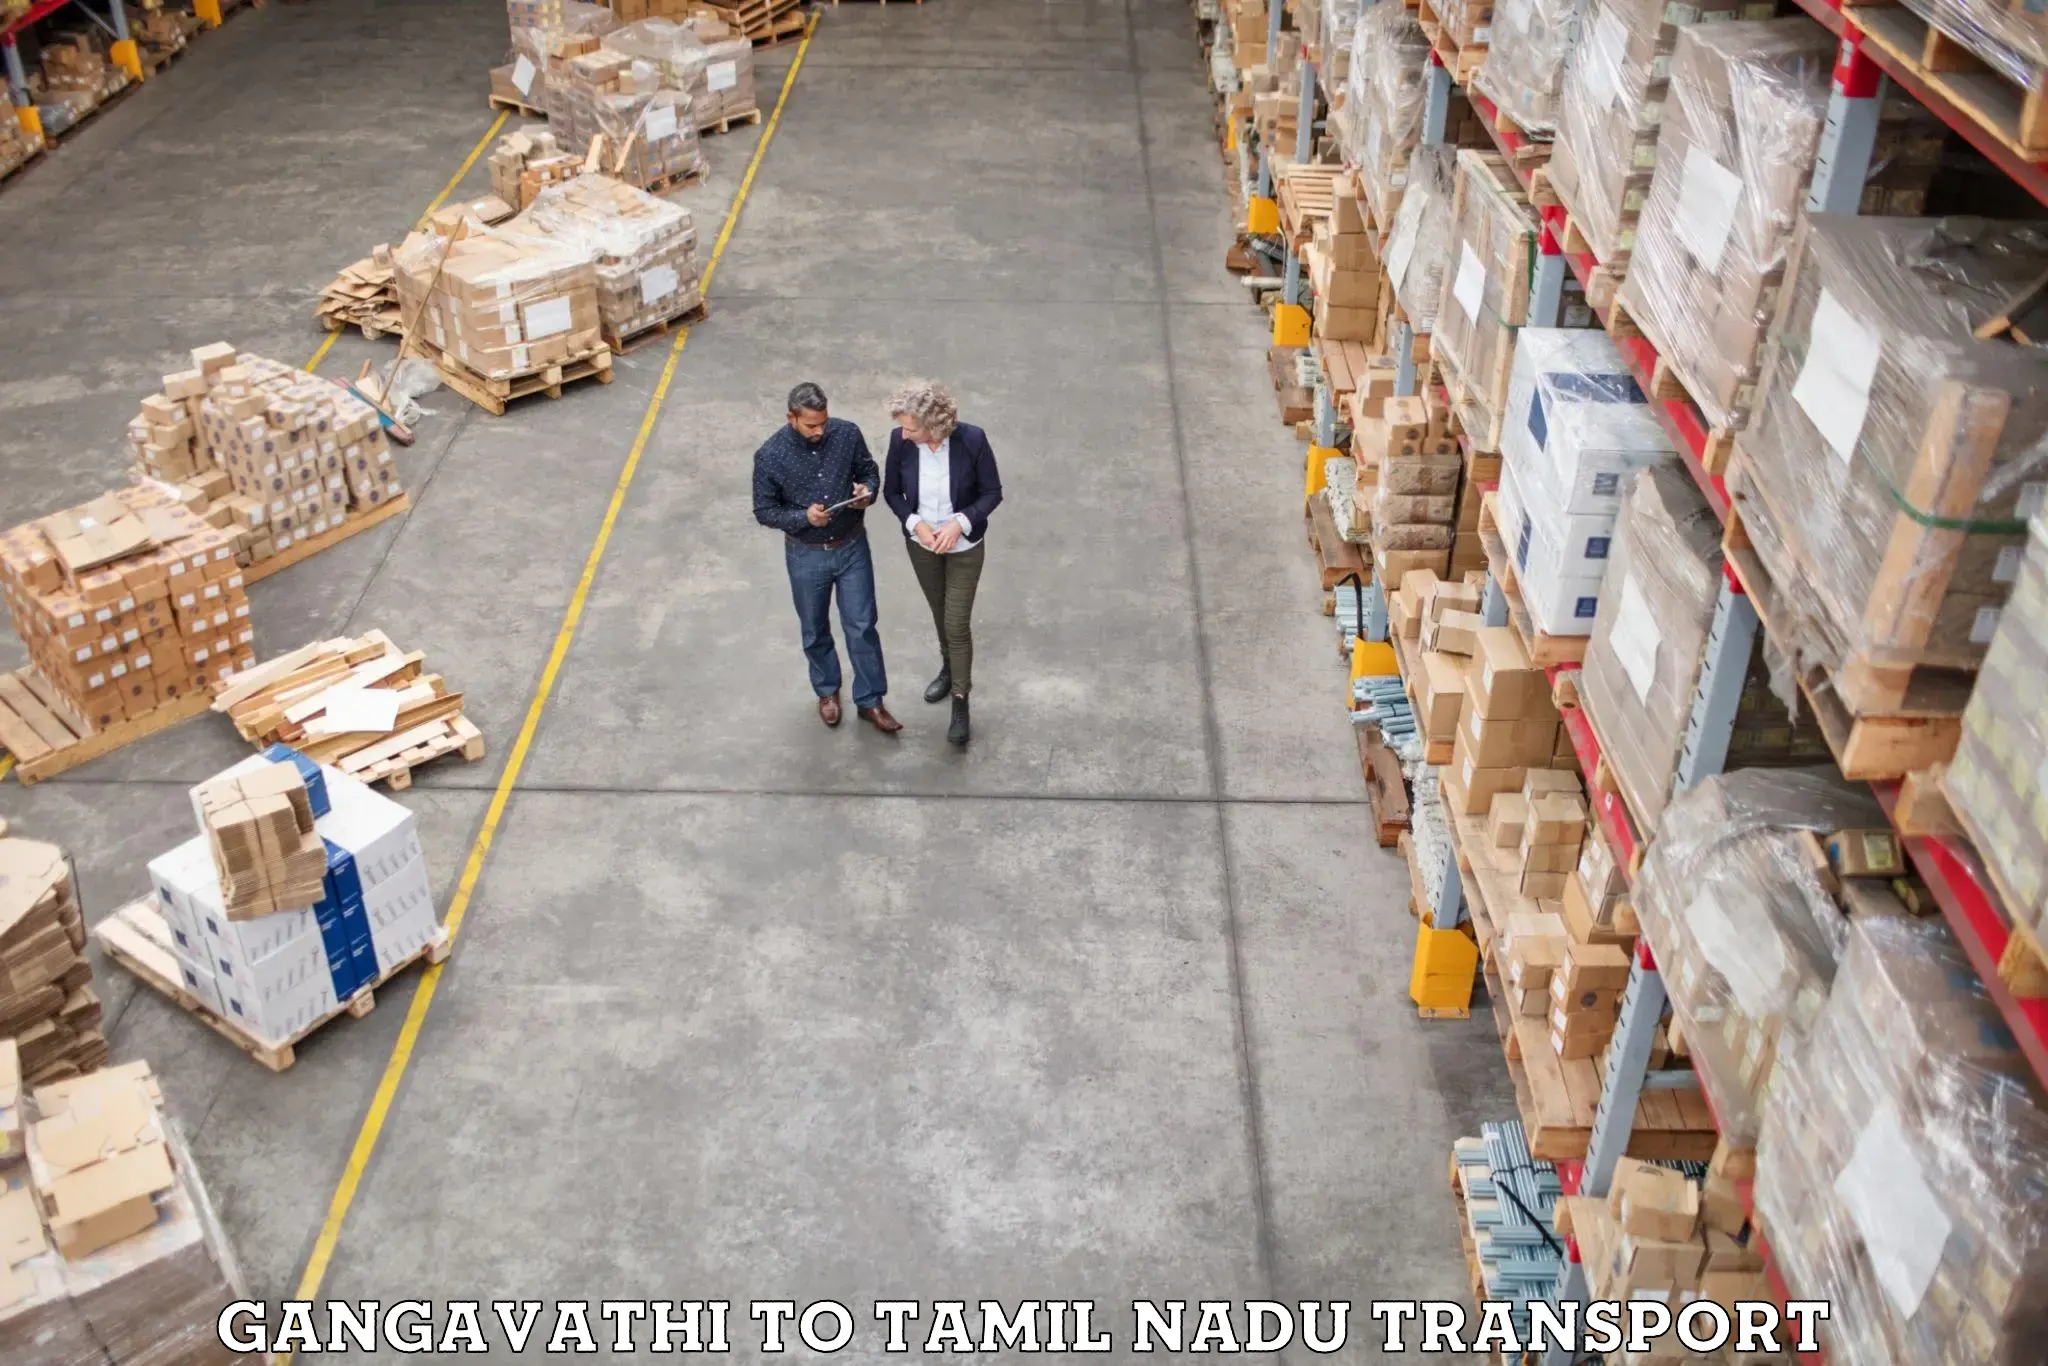 Nearest transport service Gangavathi to Tallakulam